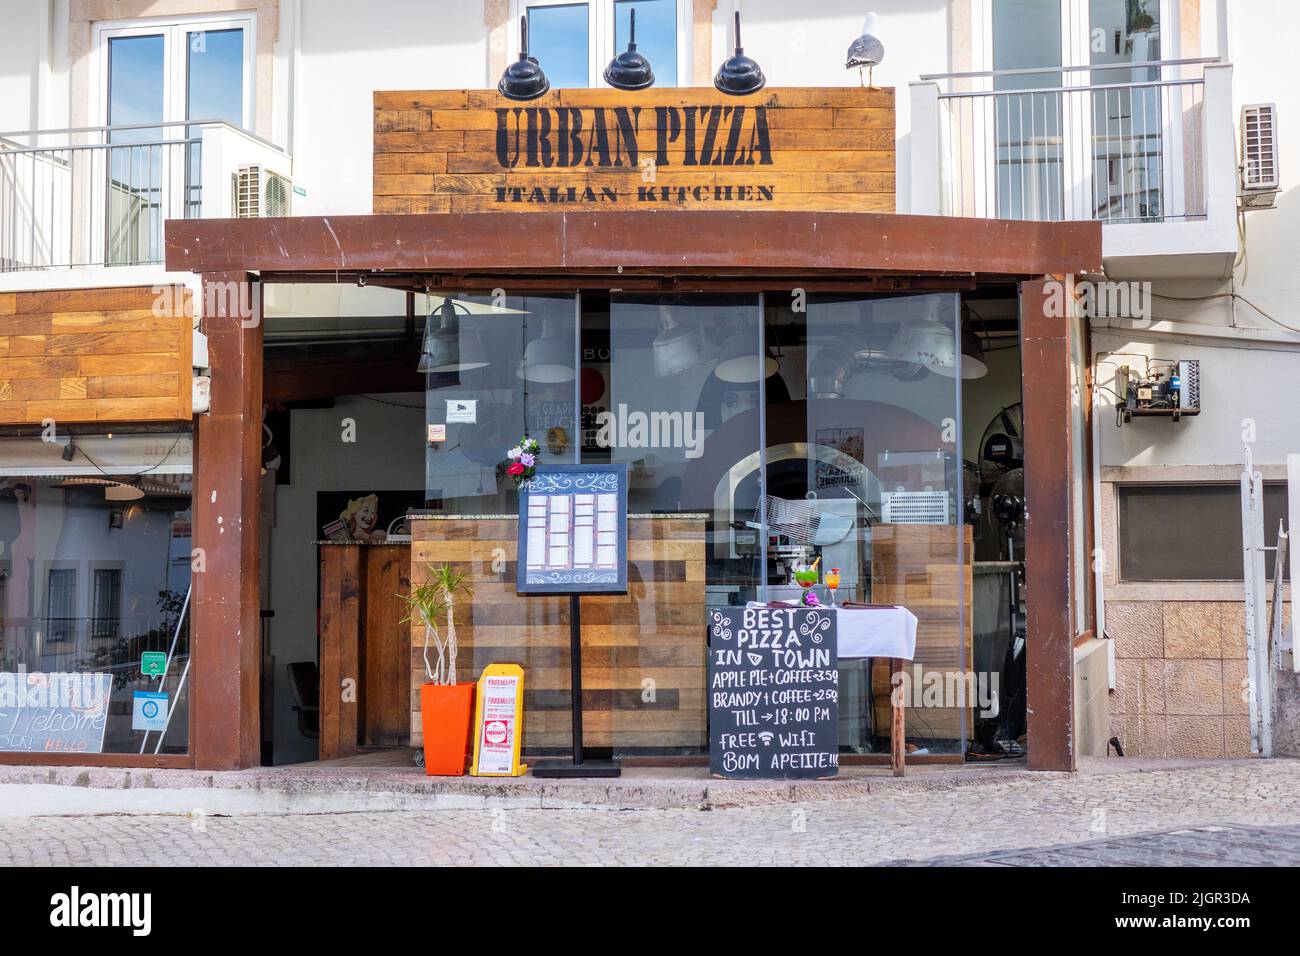 Urban Pizza Restaurant in Albufeira Altstadt Werbung auf Einem Kreidetafel Schild Beste Pizza in der Stadt außerhalb des Restaurants Menüschild hat Preise von popu Stockfoto